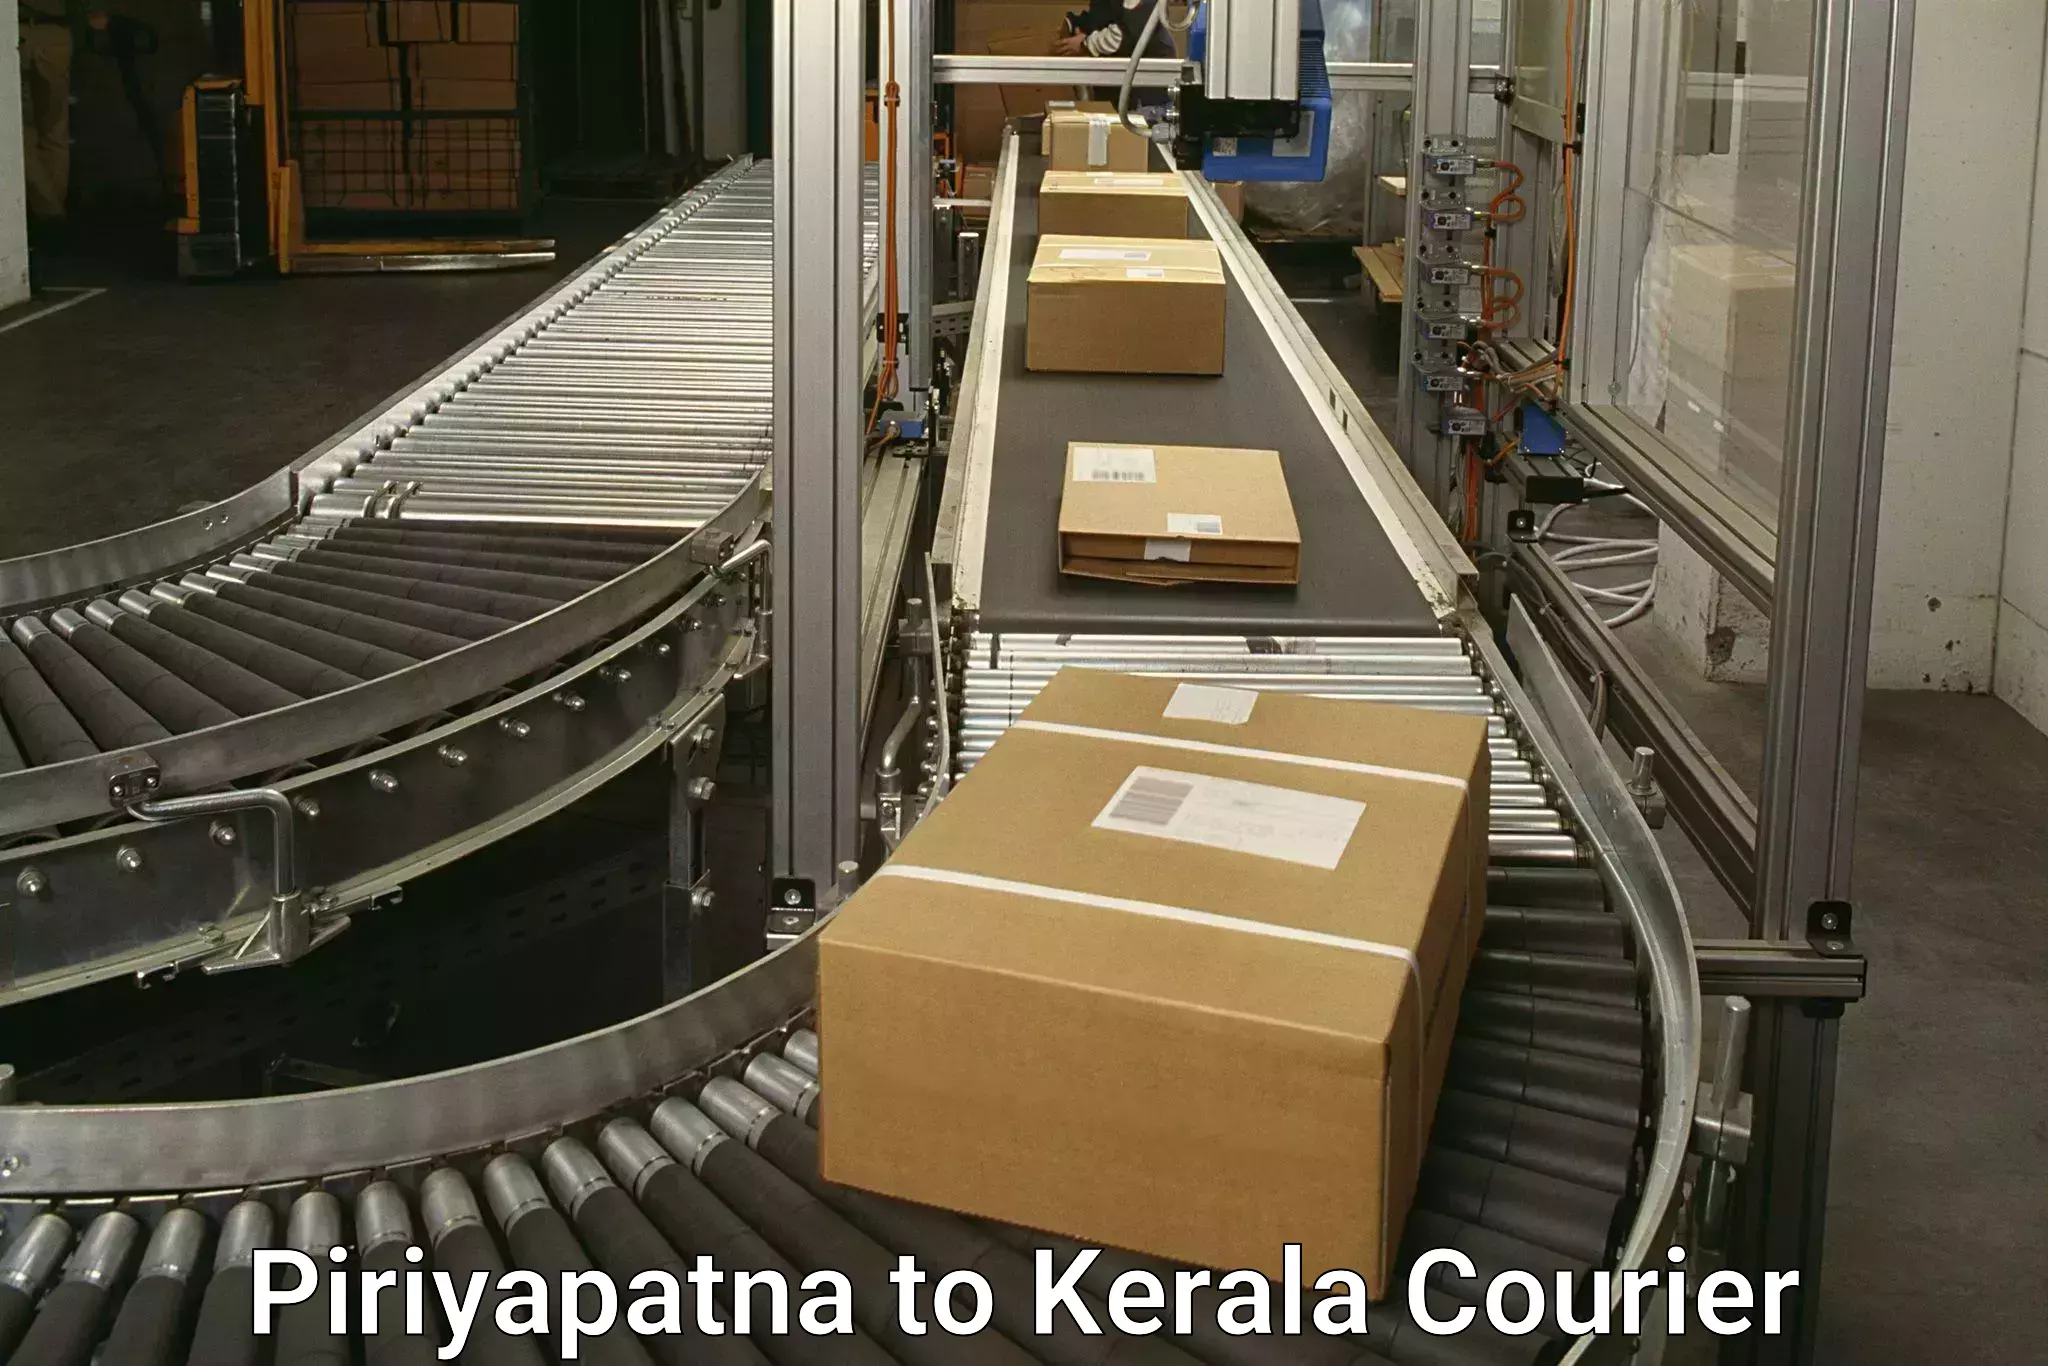 Urgent courier needs Piriyapatna to Perambra